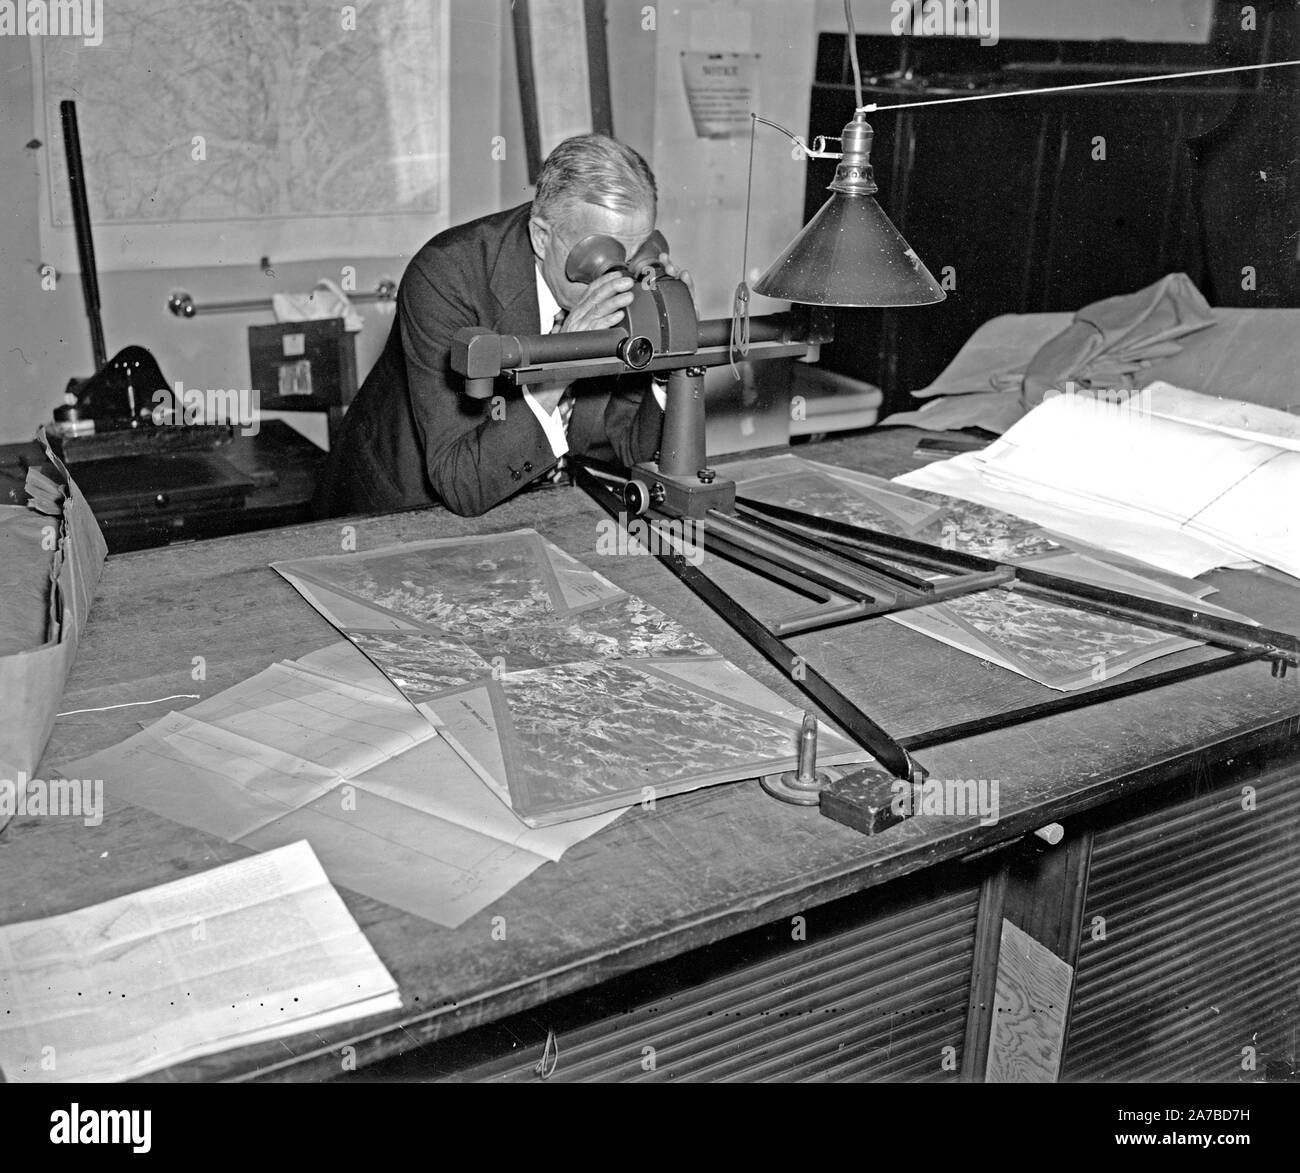 Geological Survey. Washington, 13 marzo. Albert Pike utilizzando uno stereoscopio su una coppia di fotografie per portare fuori la valvola di sfiato e di individuare gli oggetti di una mappa ca. 1937 Foto Stock